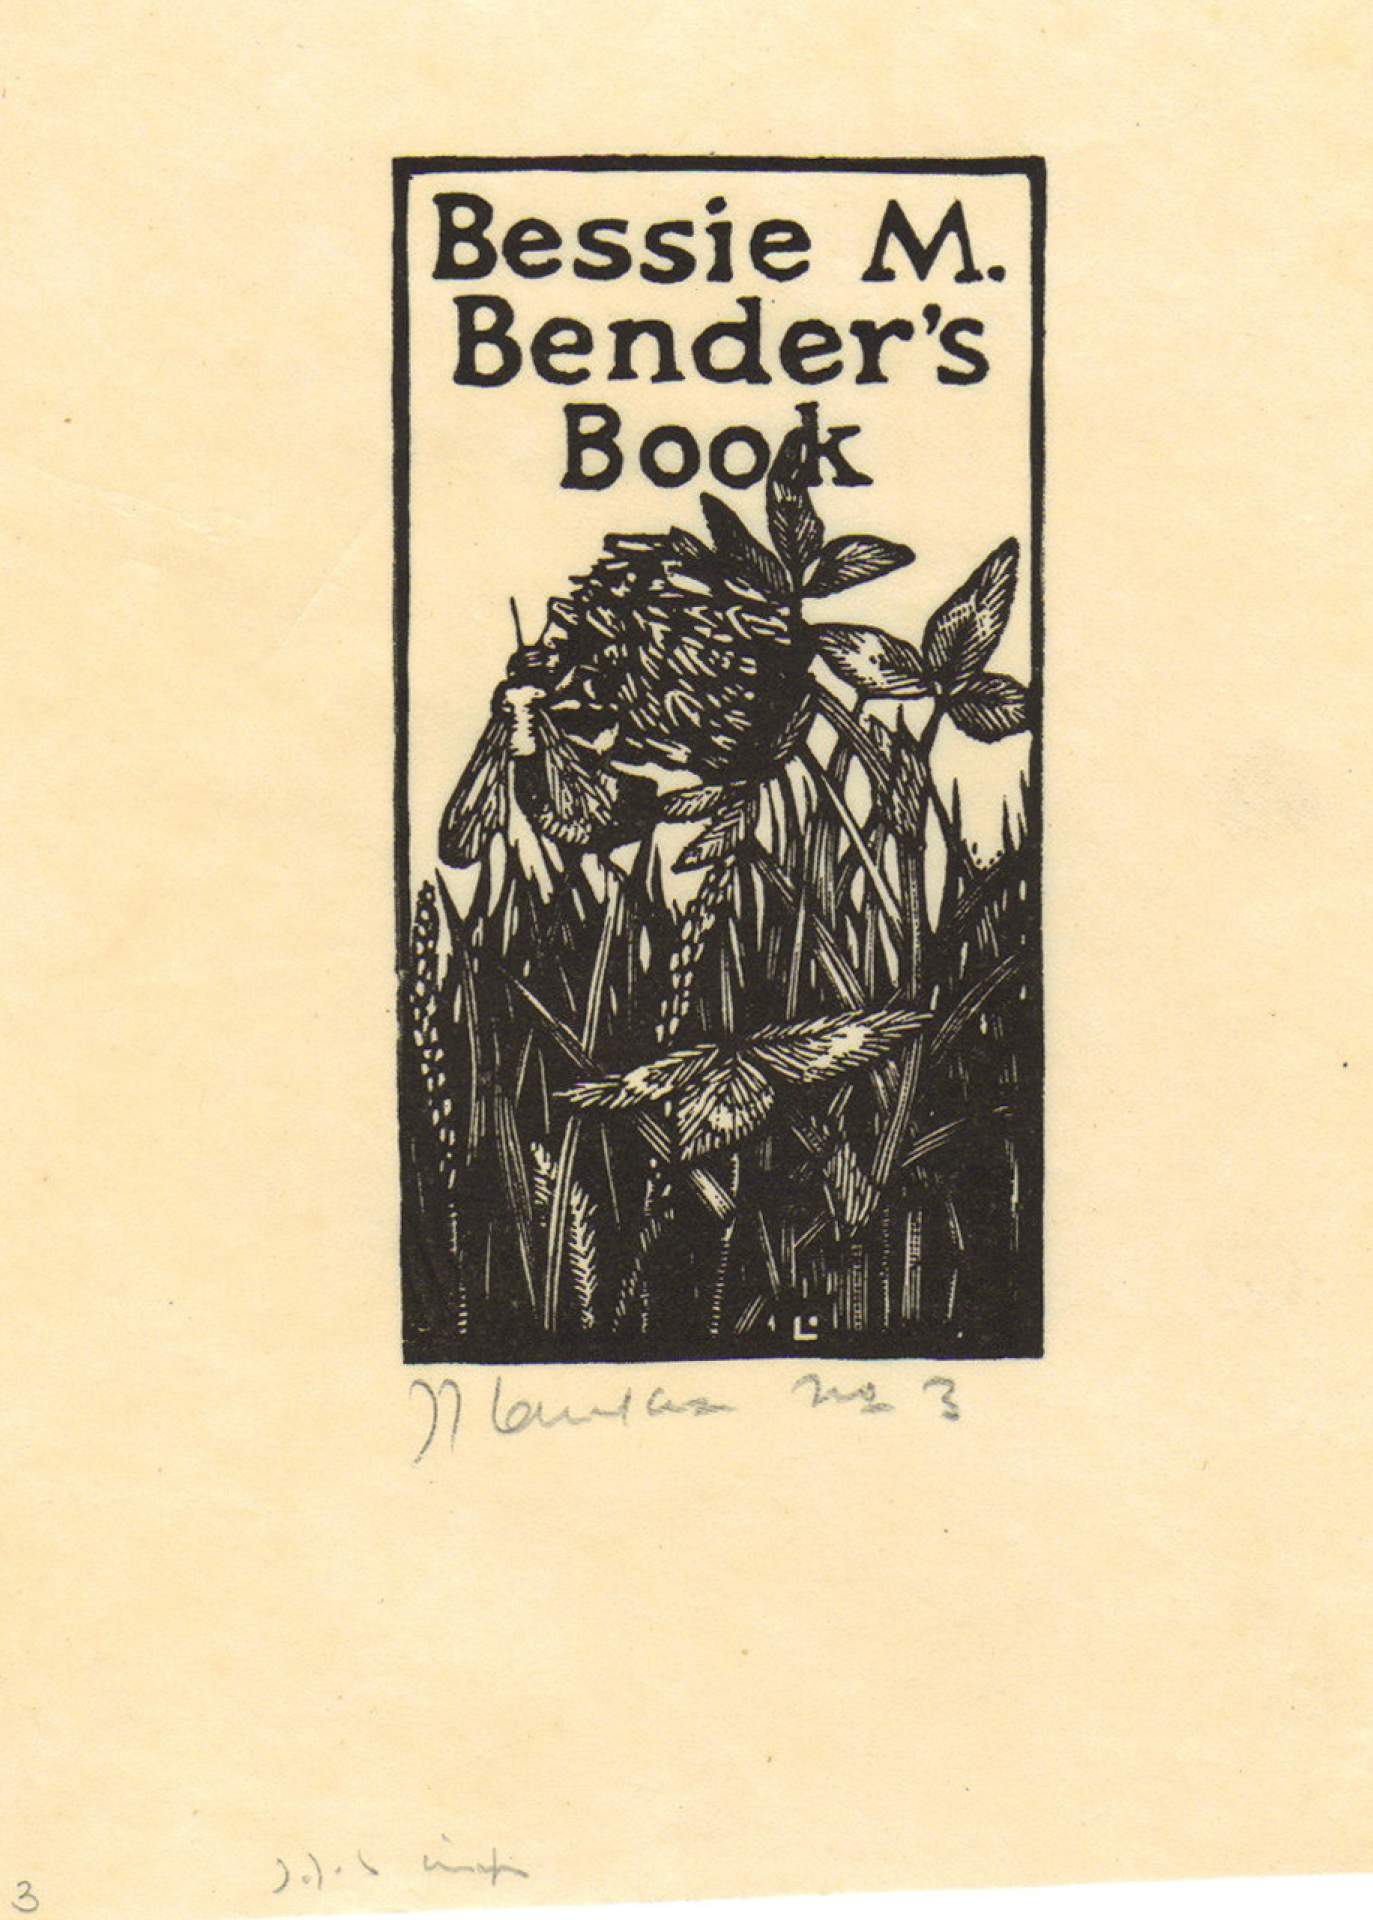 Bessie M. Binder's Book